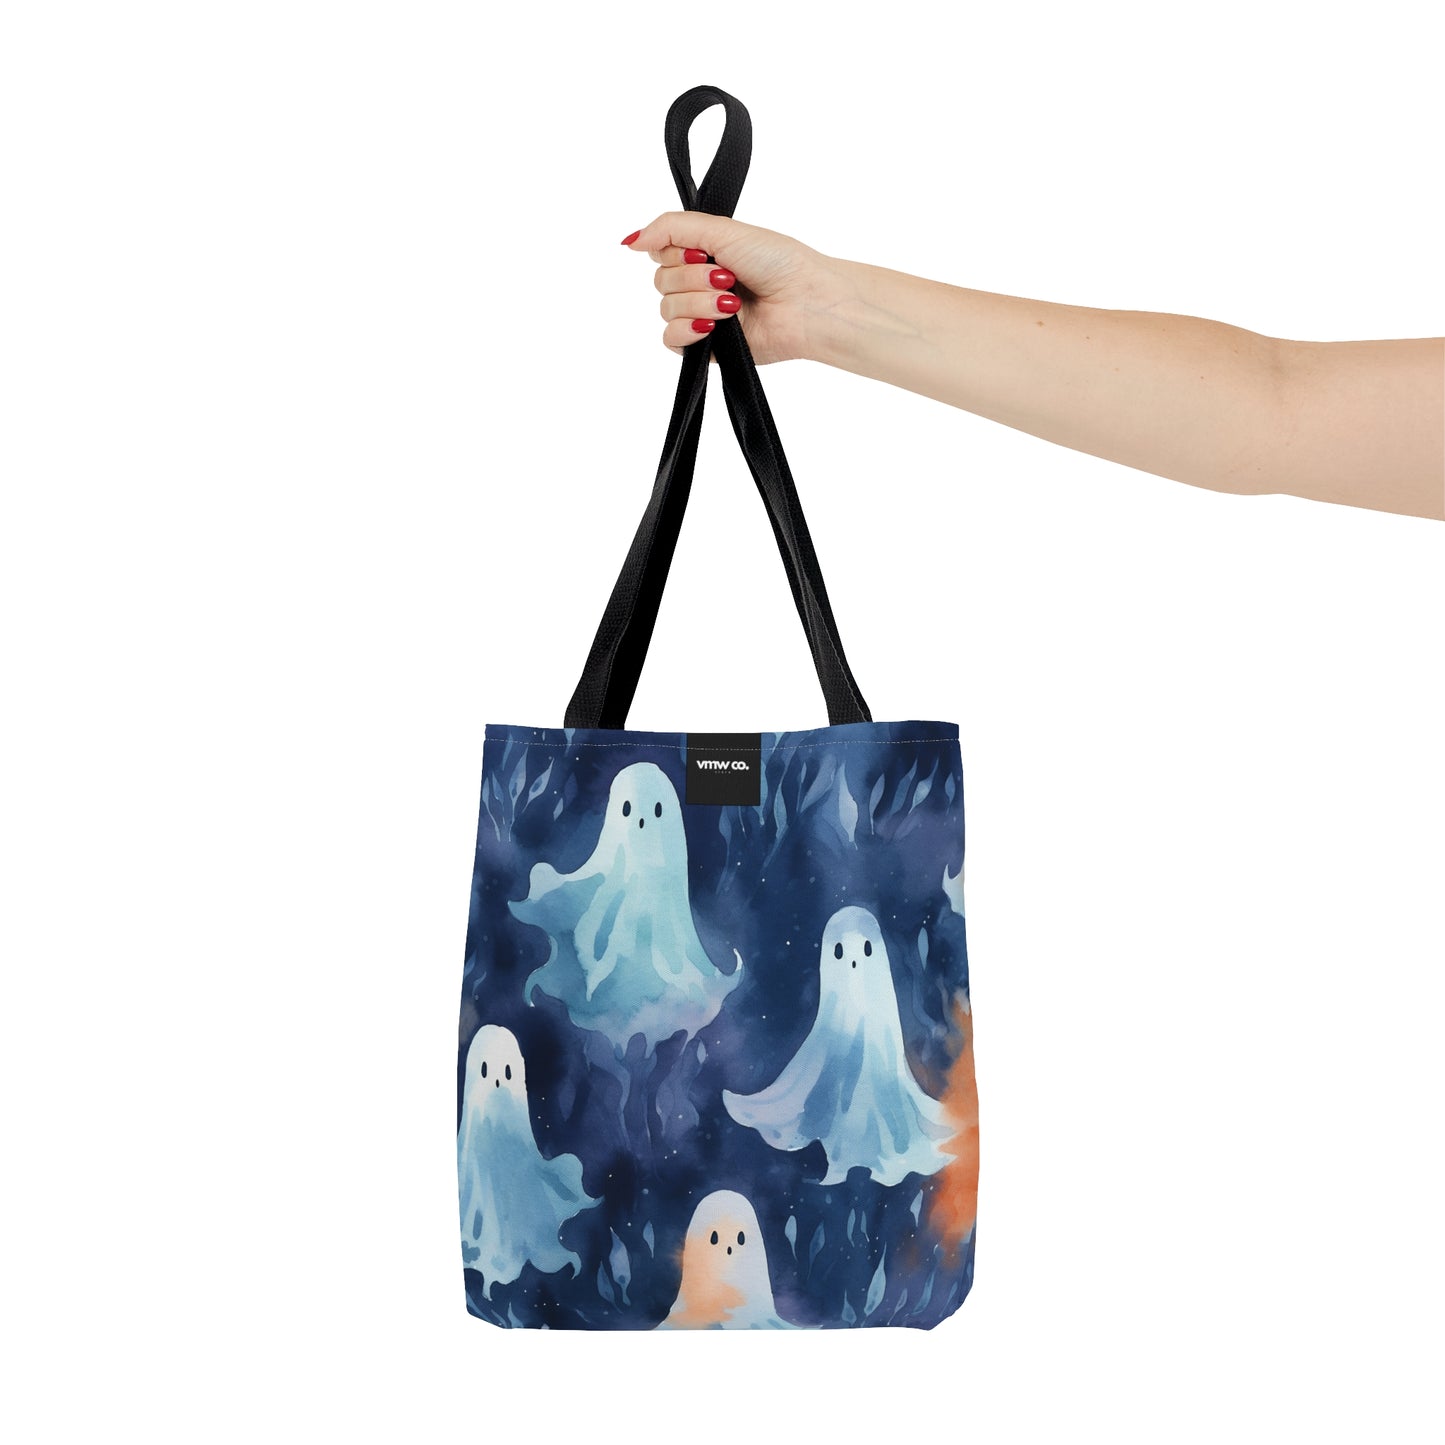 Ghosts Blue Tote Bag (AOP)